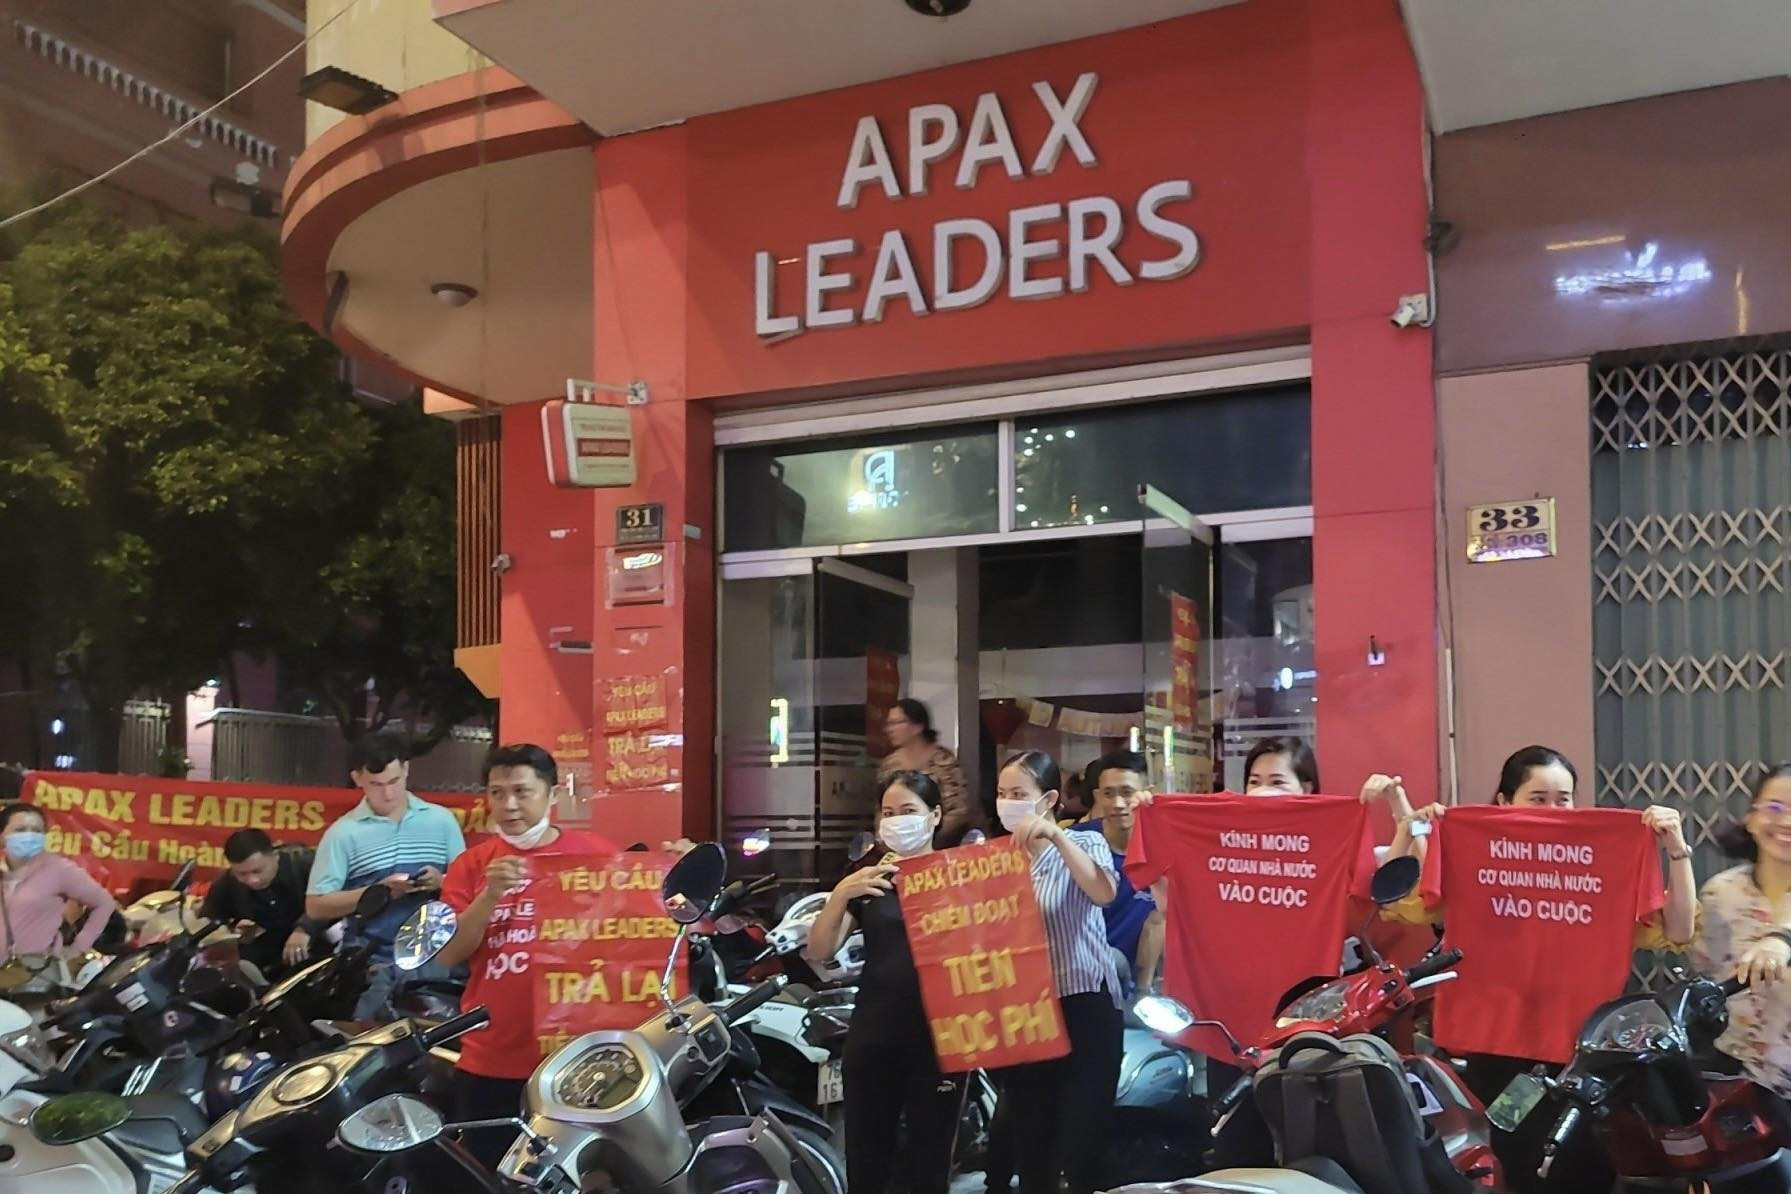 'Vây' trung tâm đòi tiền trong đêm: 'Chúng tôi đã cạn niềm tin với Apax Leaders'